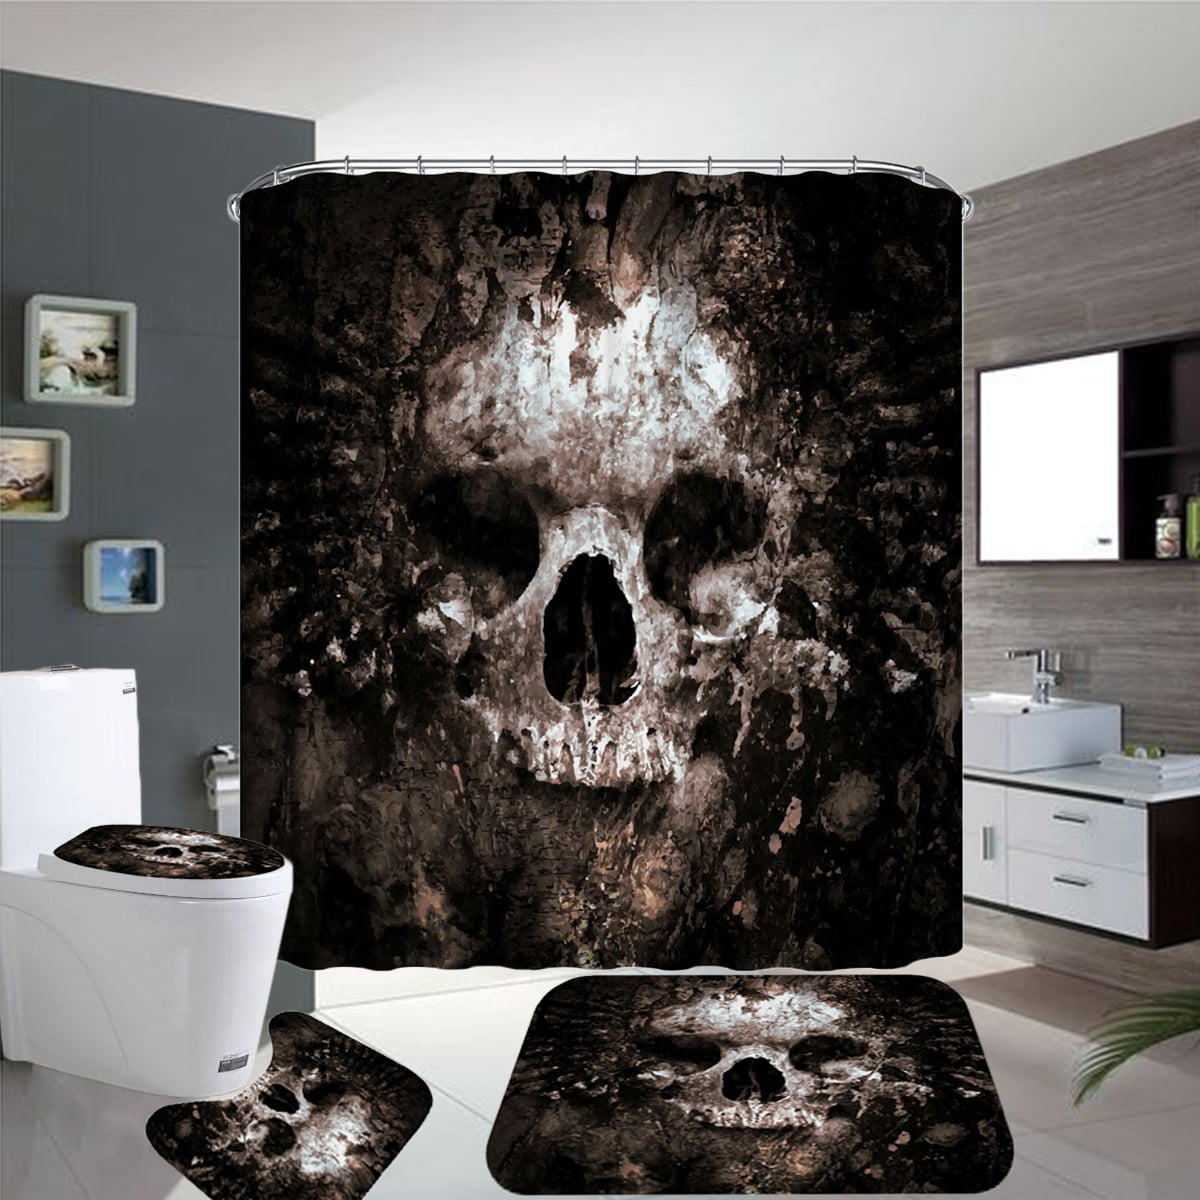 Details about   4pcs Skull Bathroom Set Shower Curtain Toilet Seat Cover Bath Mat Non-Slip 